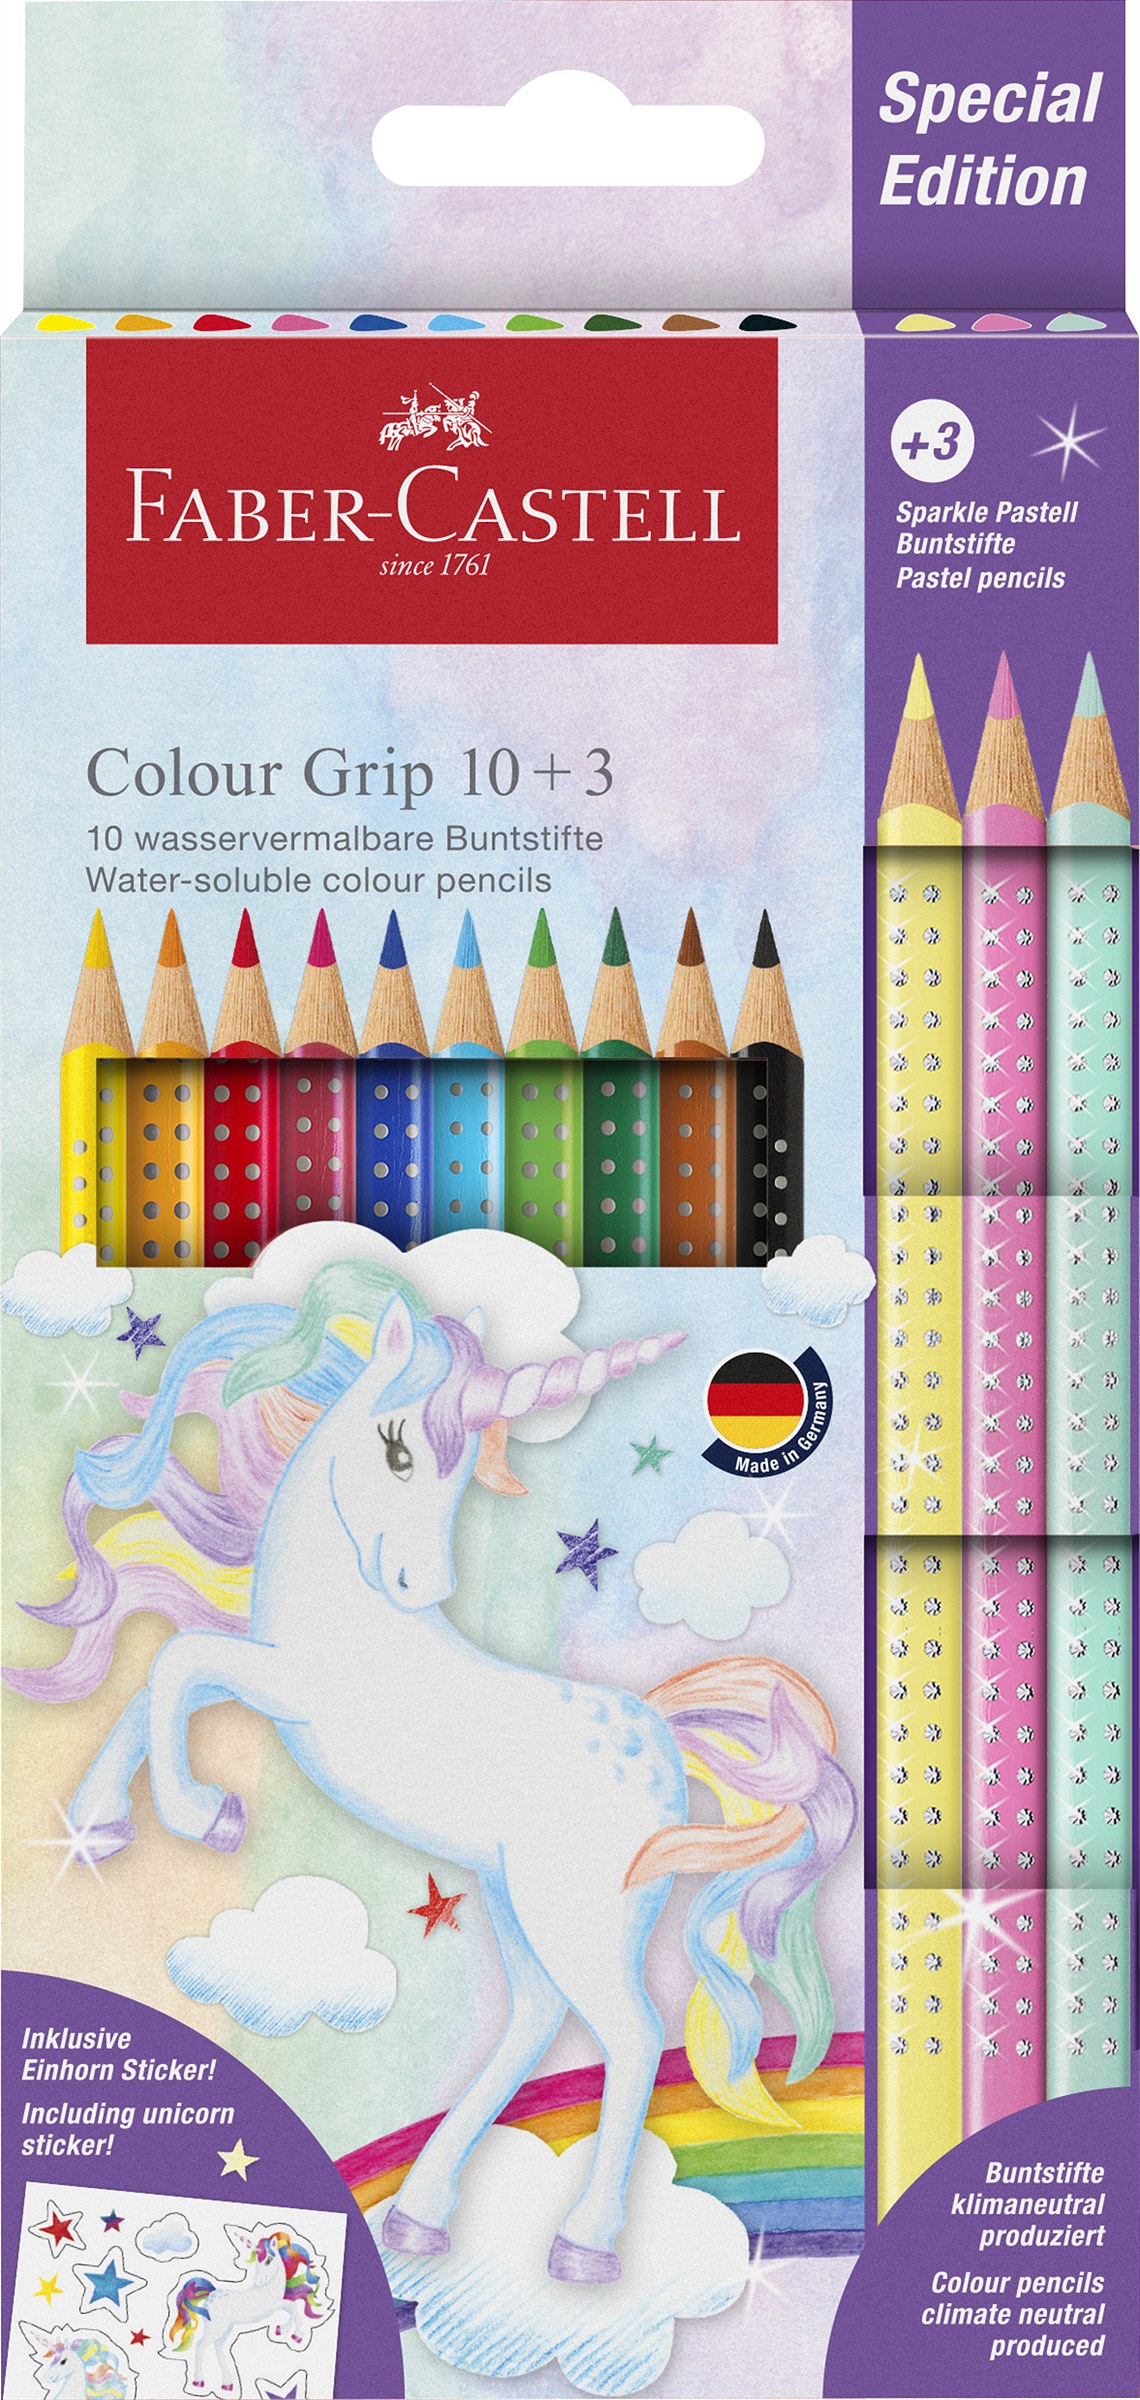 Faber-Castell_CP Colour Grip unicorn 10+3_EUR 10,00